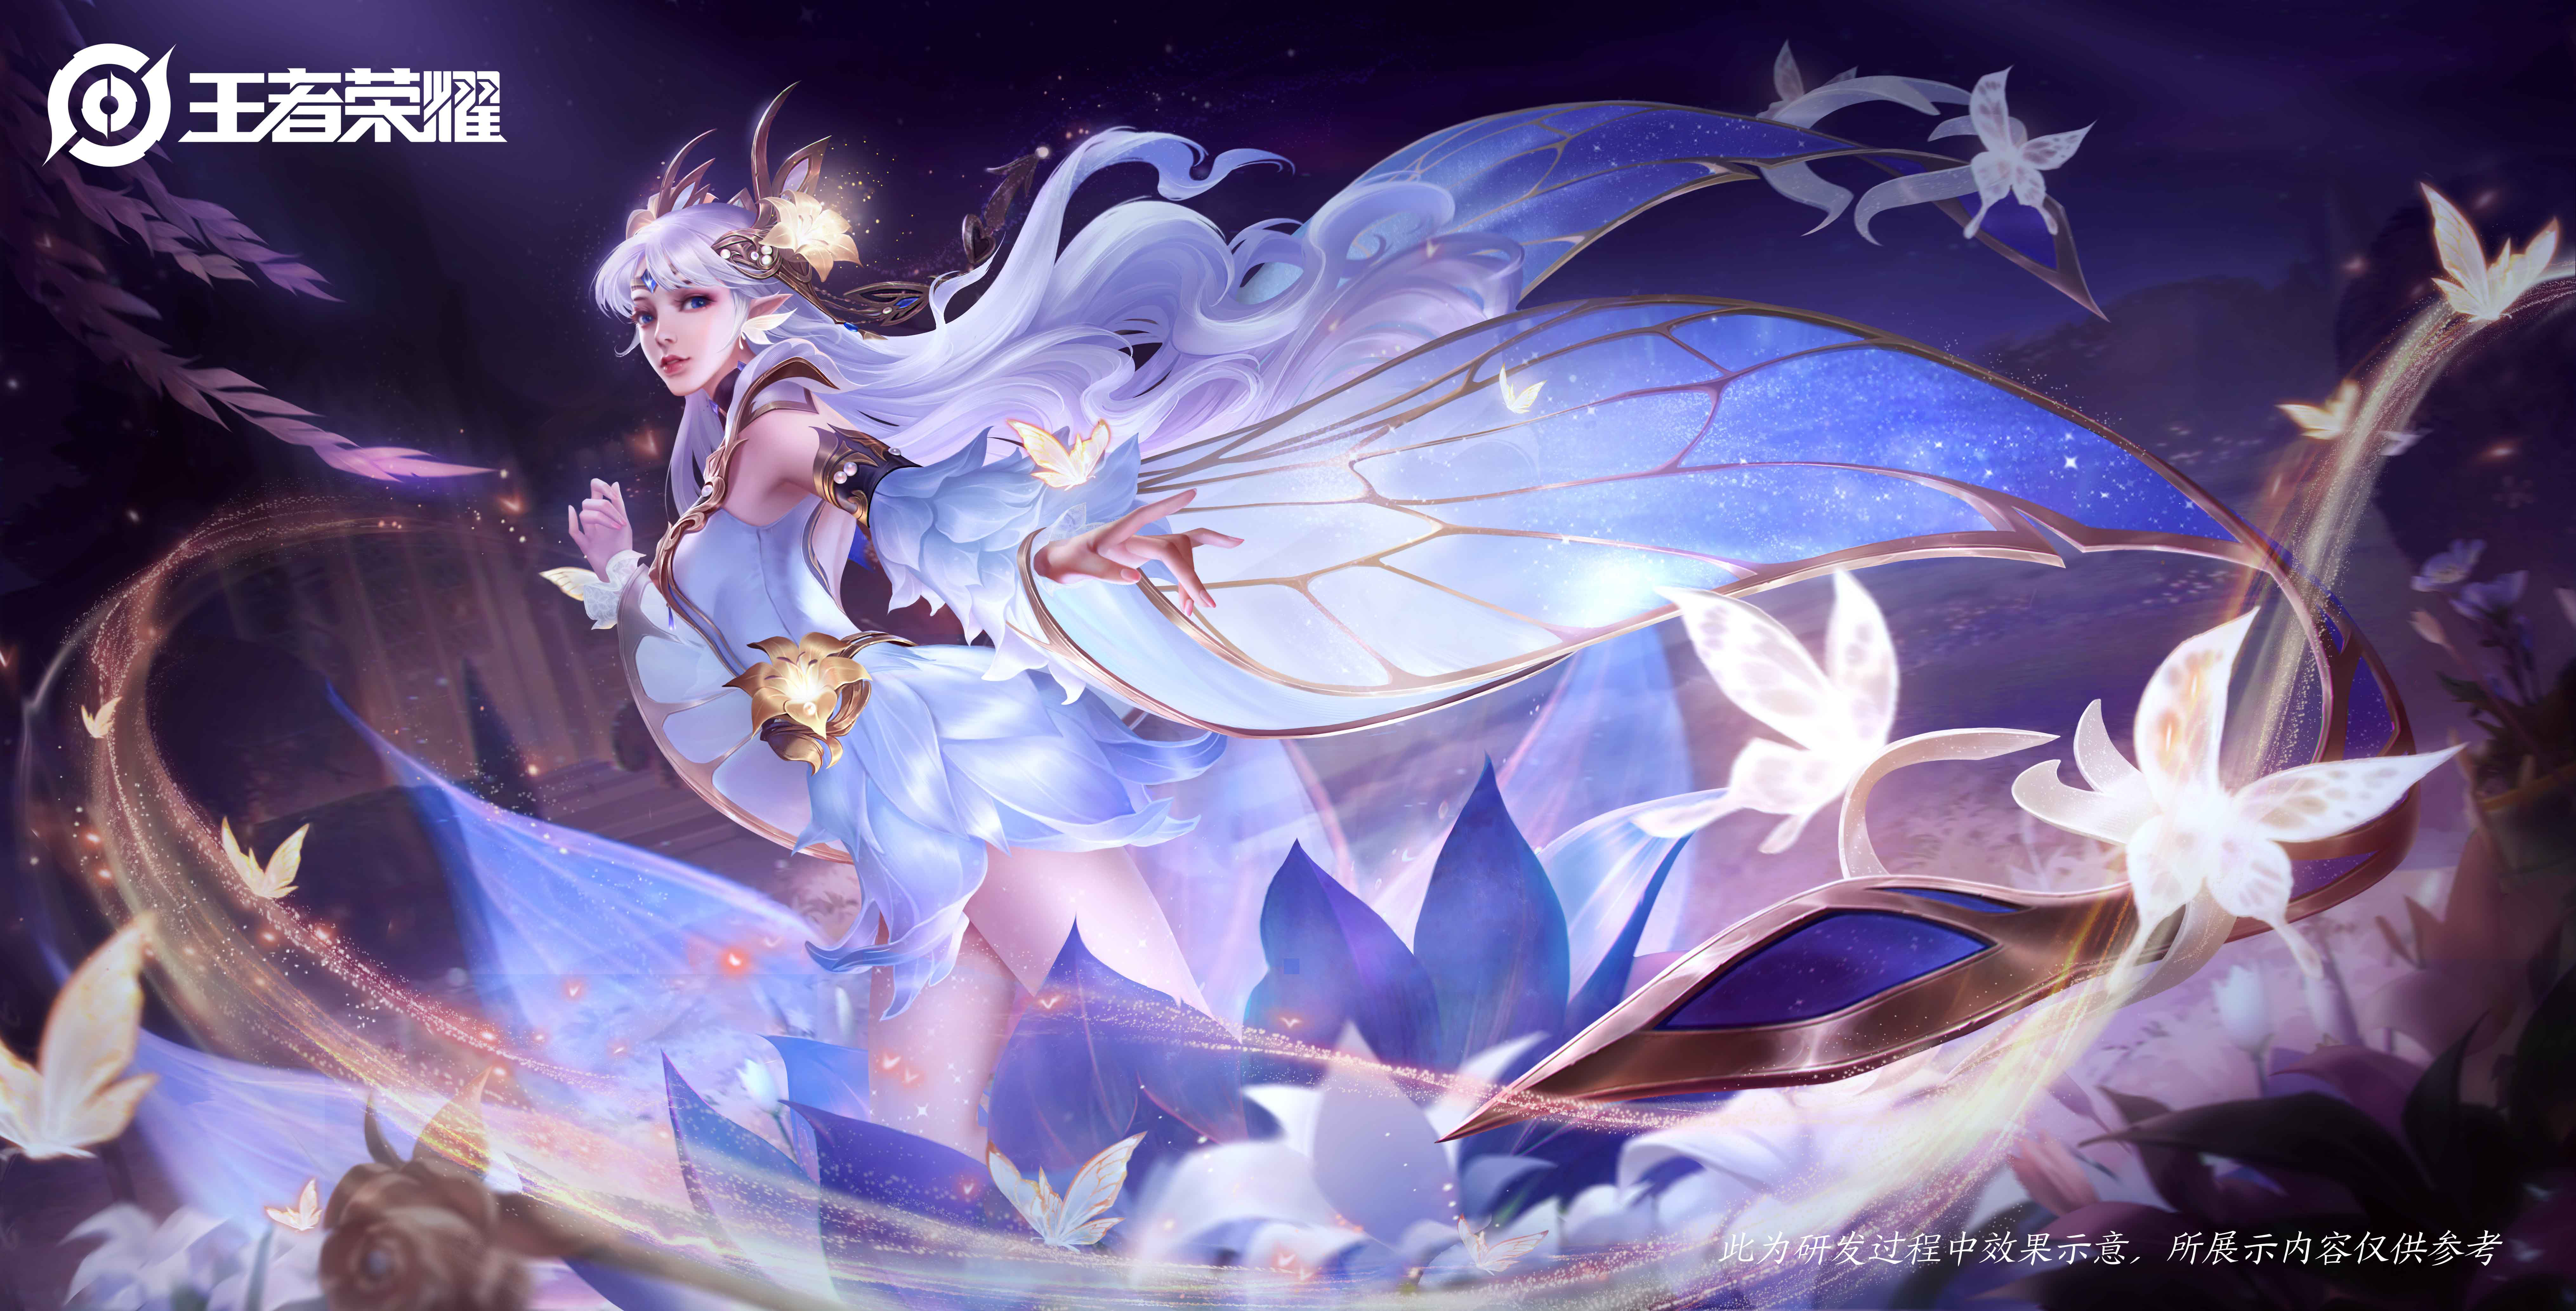 Anime 8120x4134 fantasy girl Honor of Kings artwork fantasy art